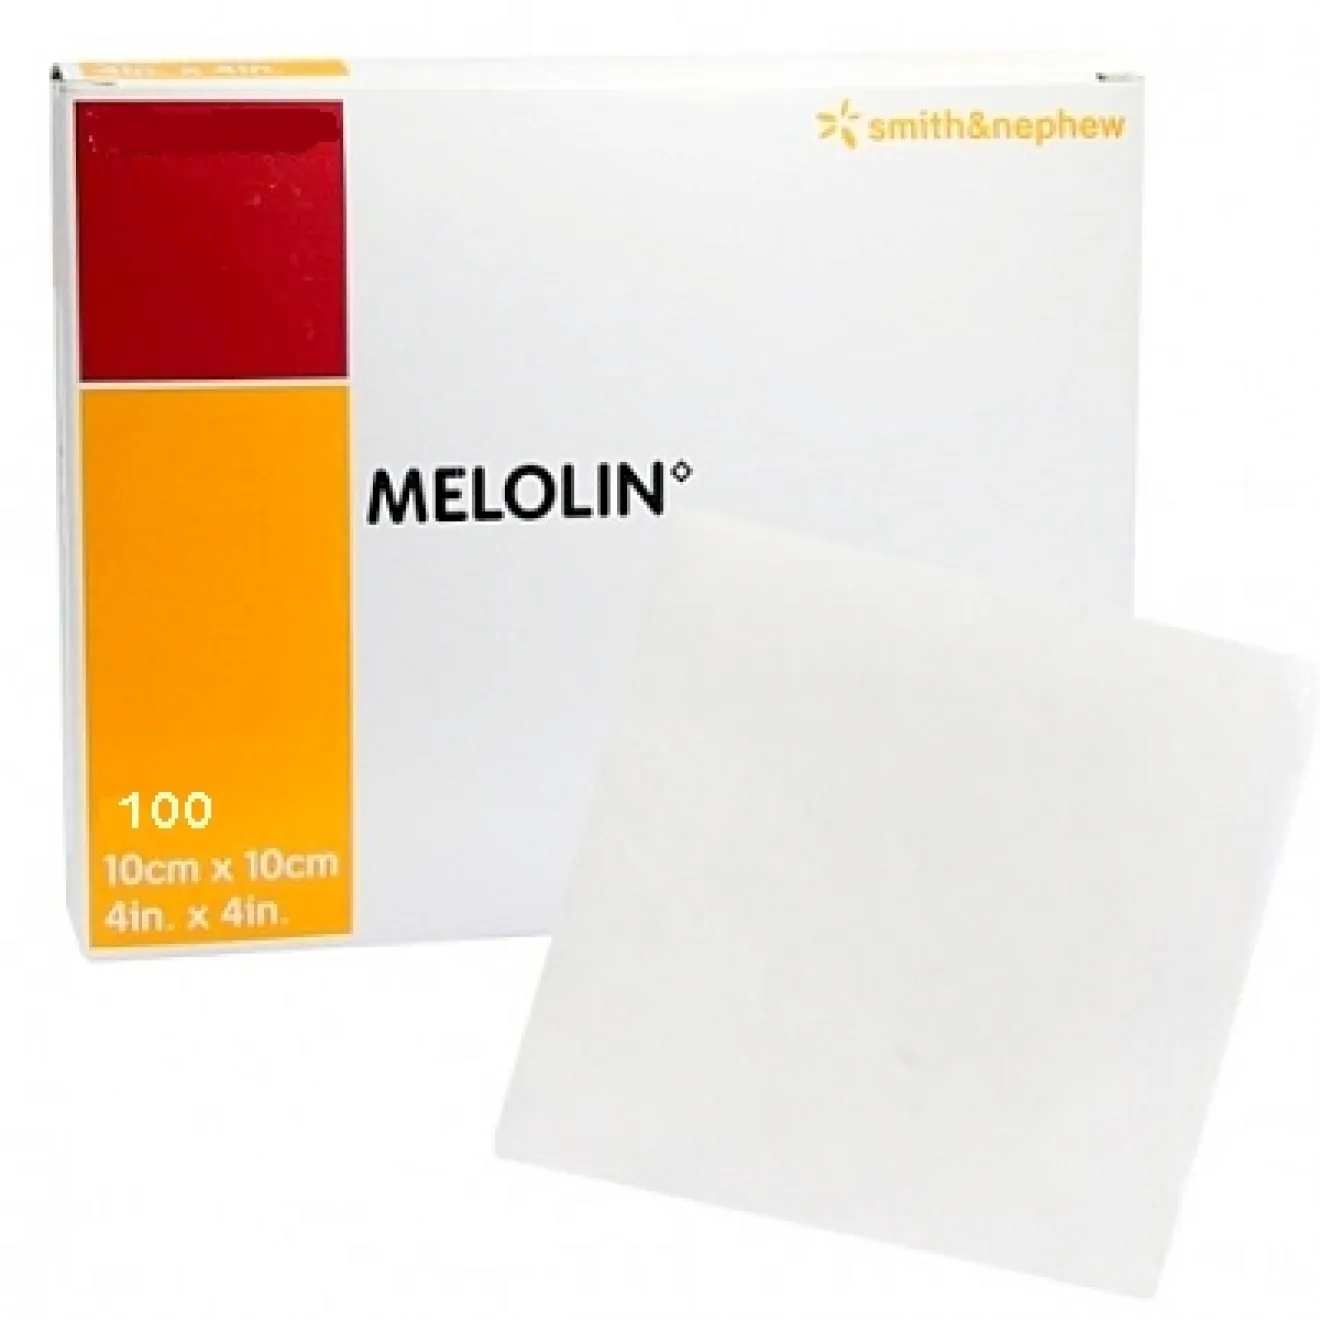 Melolin 10x10cm Wundauflagen S+N, 100 ST